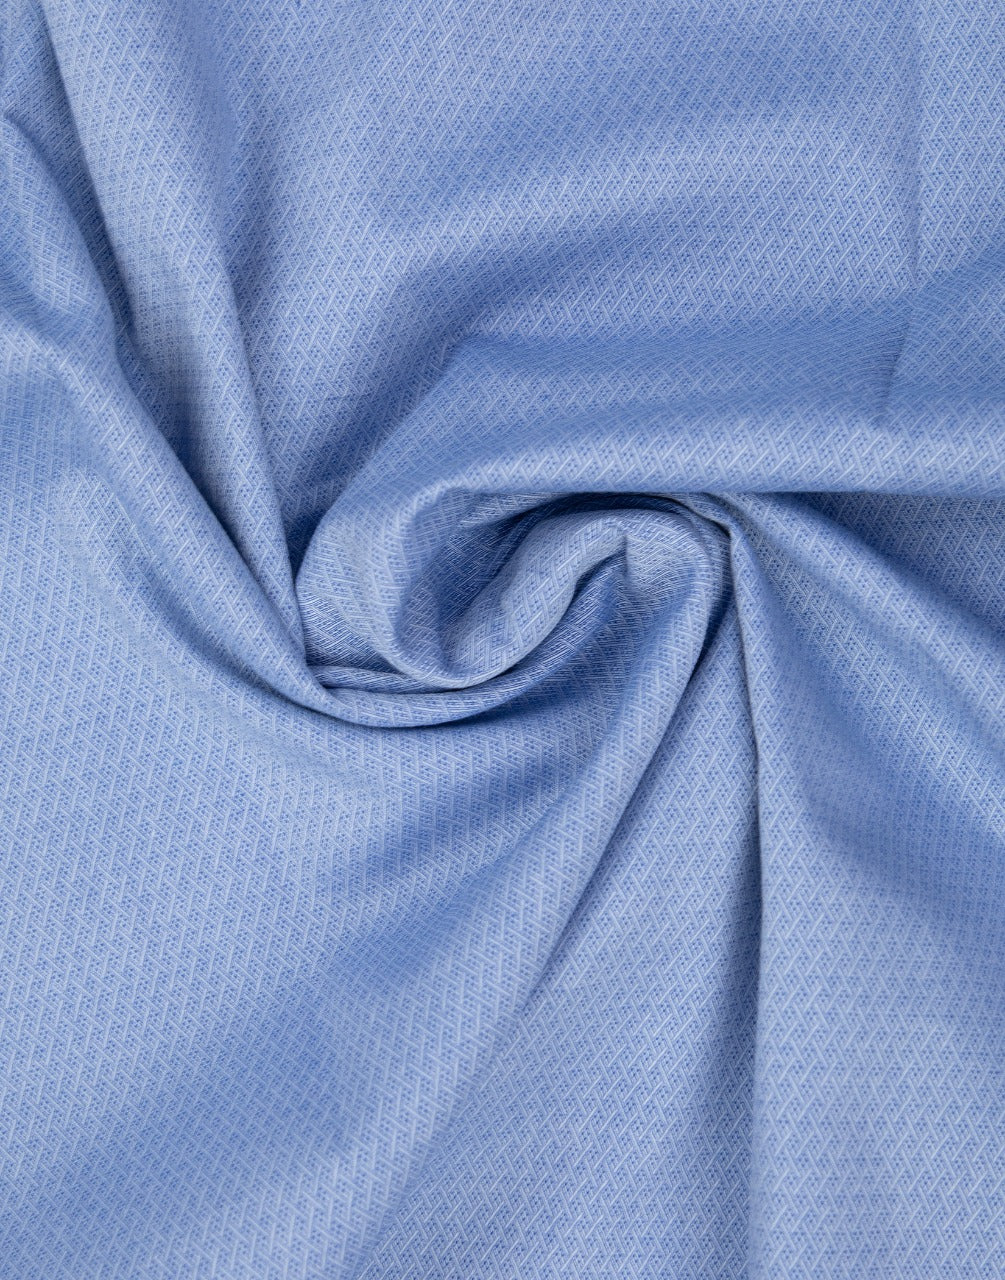 Blue color formal cotton shirt